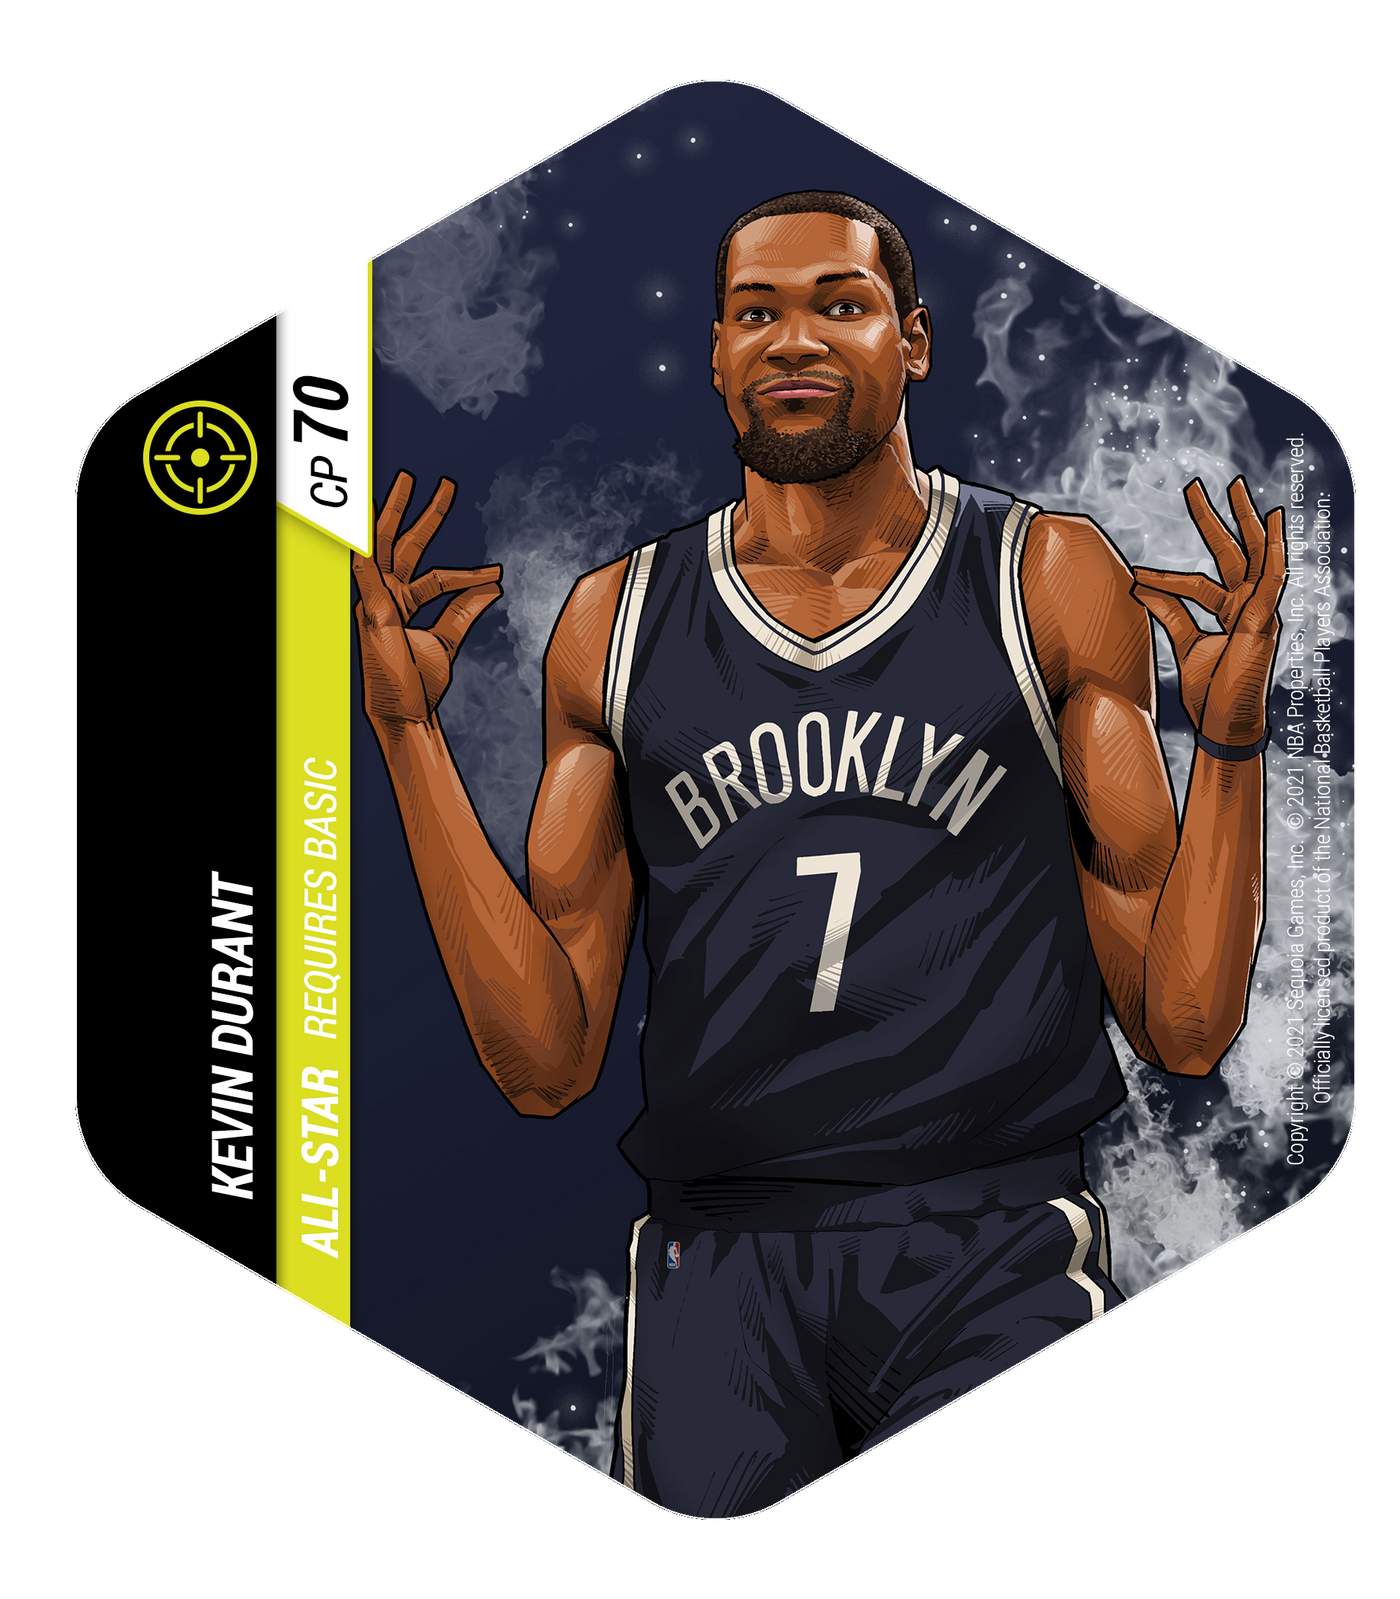 Flex NBA Brooklyn Nets 1-Player Starter Set